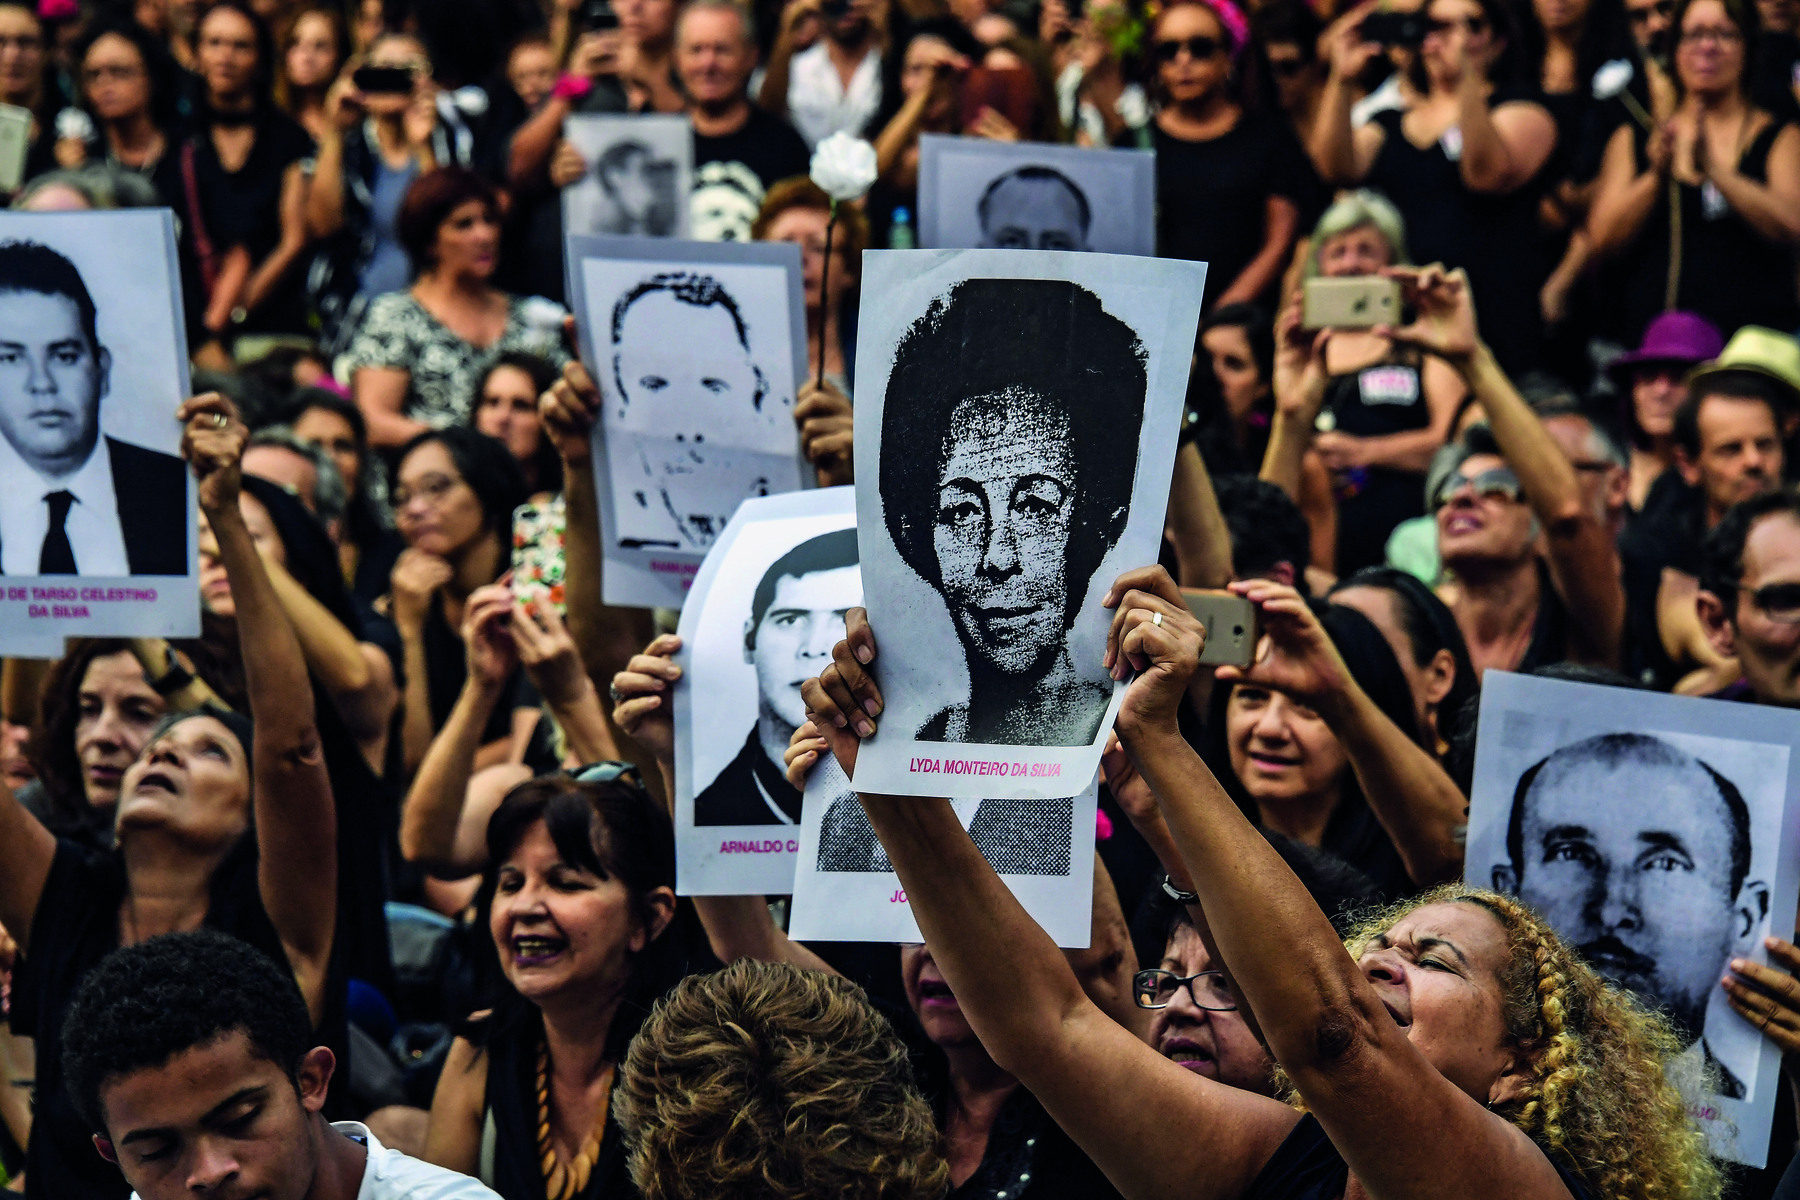 Fotografia. Uma multidão em uma manifestação. Com os braços erguidos para o alto, algumas pessoas seguram cartazes com retratos em preto e branco de diferentes pessoas, homens e mulheres. Os nomes dessas pessoas, ilegíveis na fotografia, estão escritos logo abaixo dos retratos, em caracteres na cor vermelha.